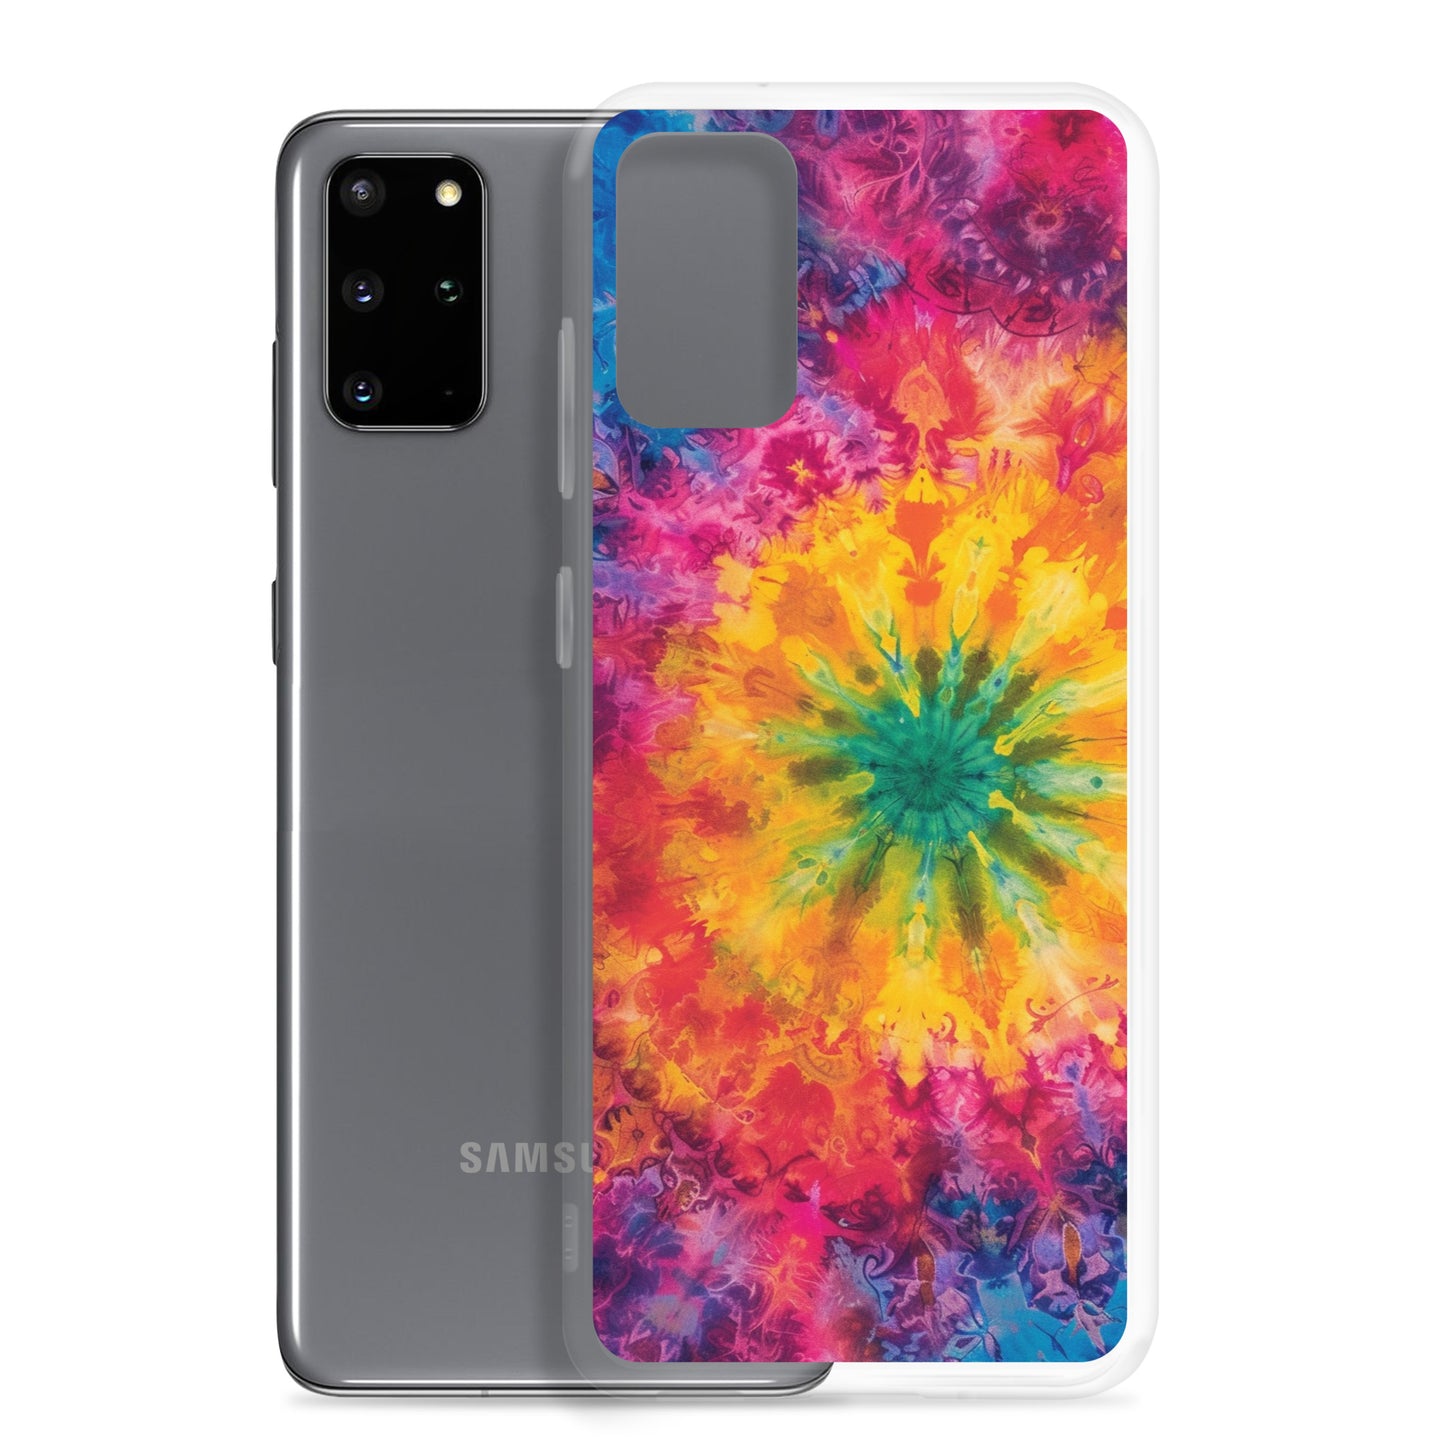 Samsung Case - Psychedelic Dreamscape